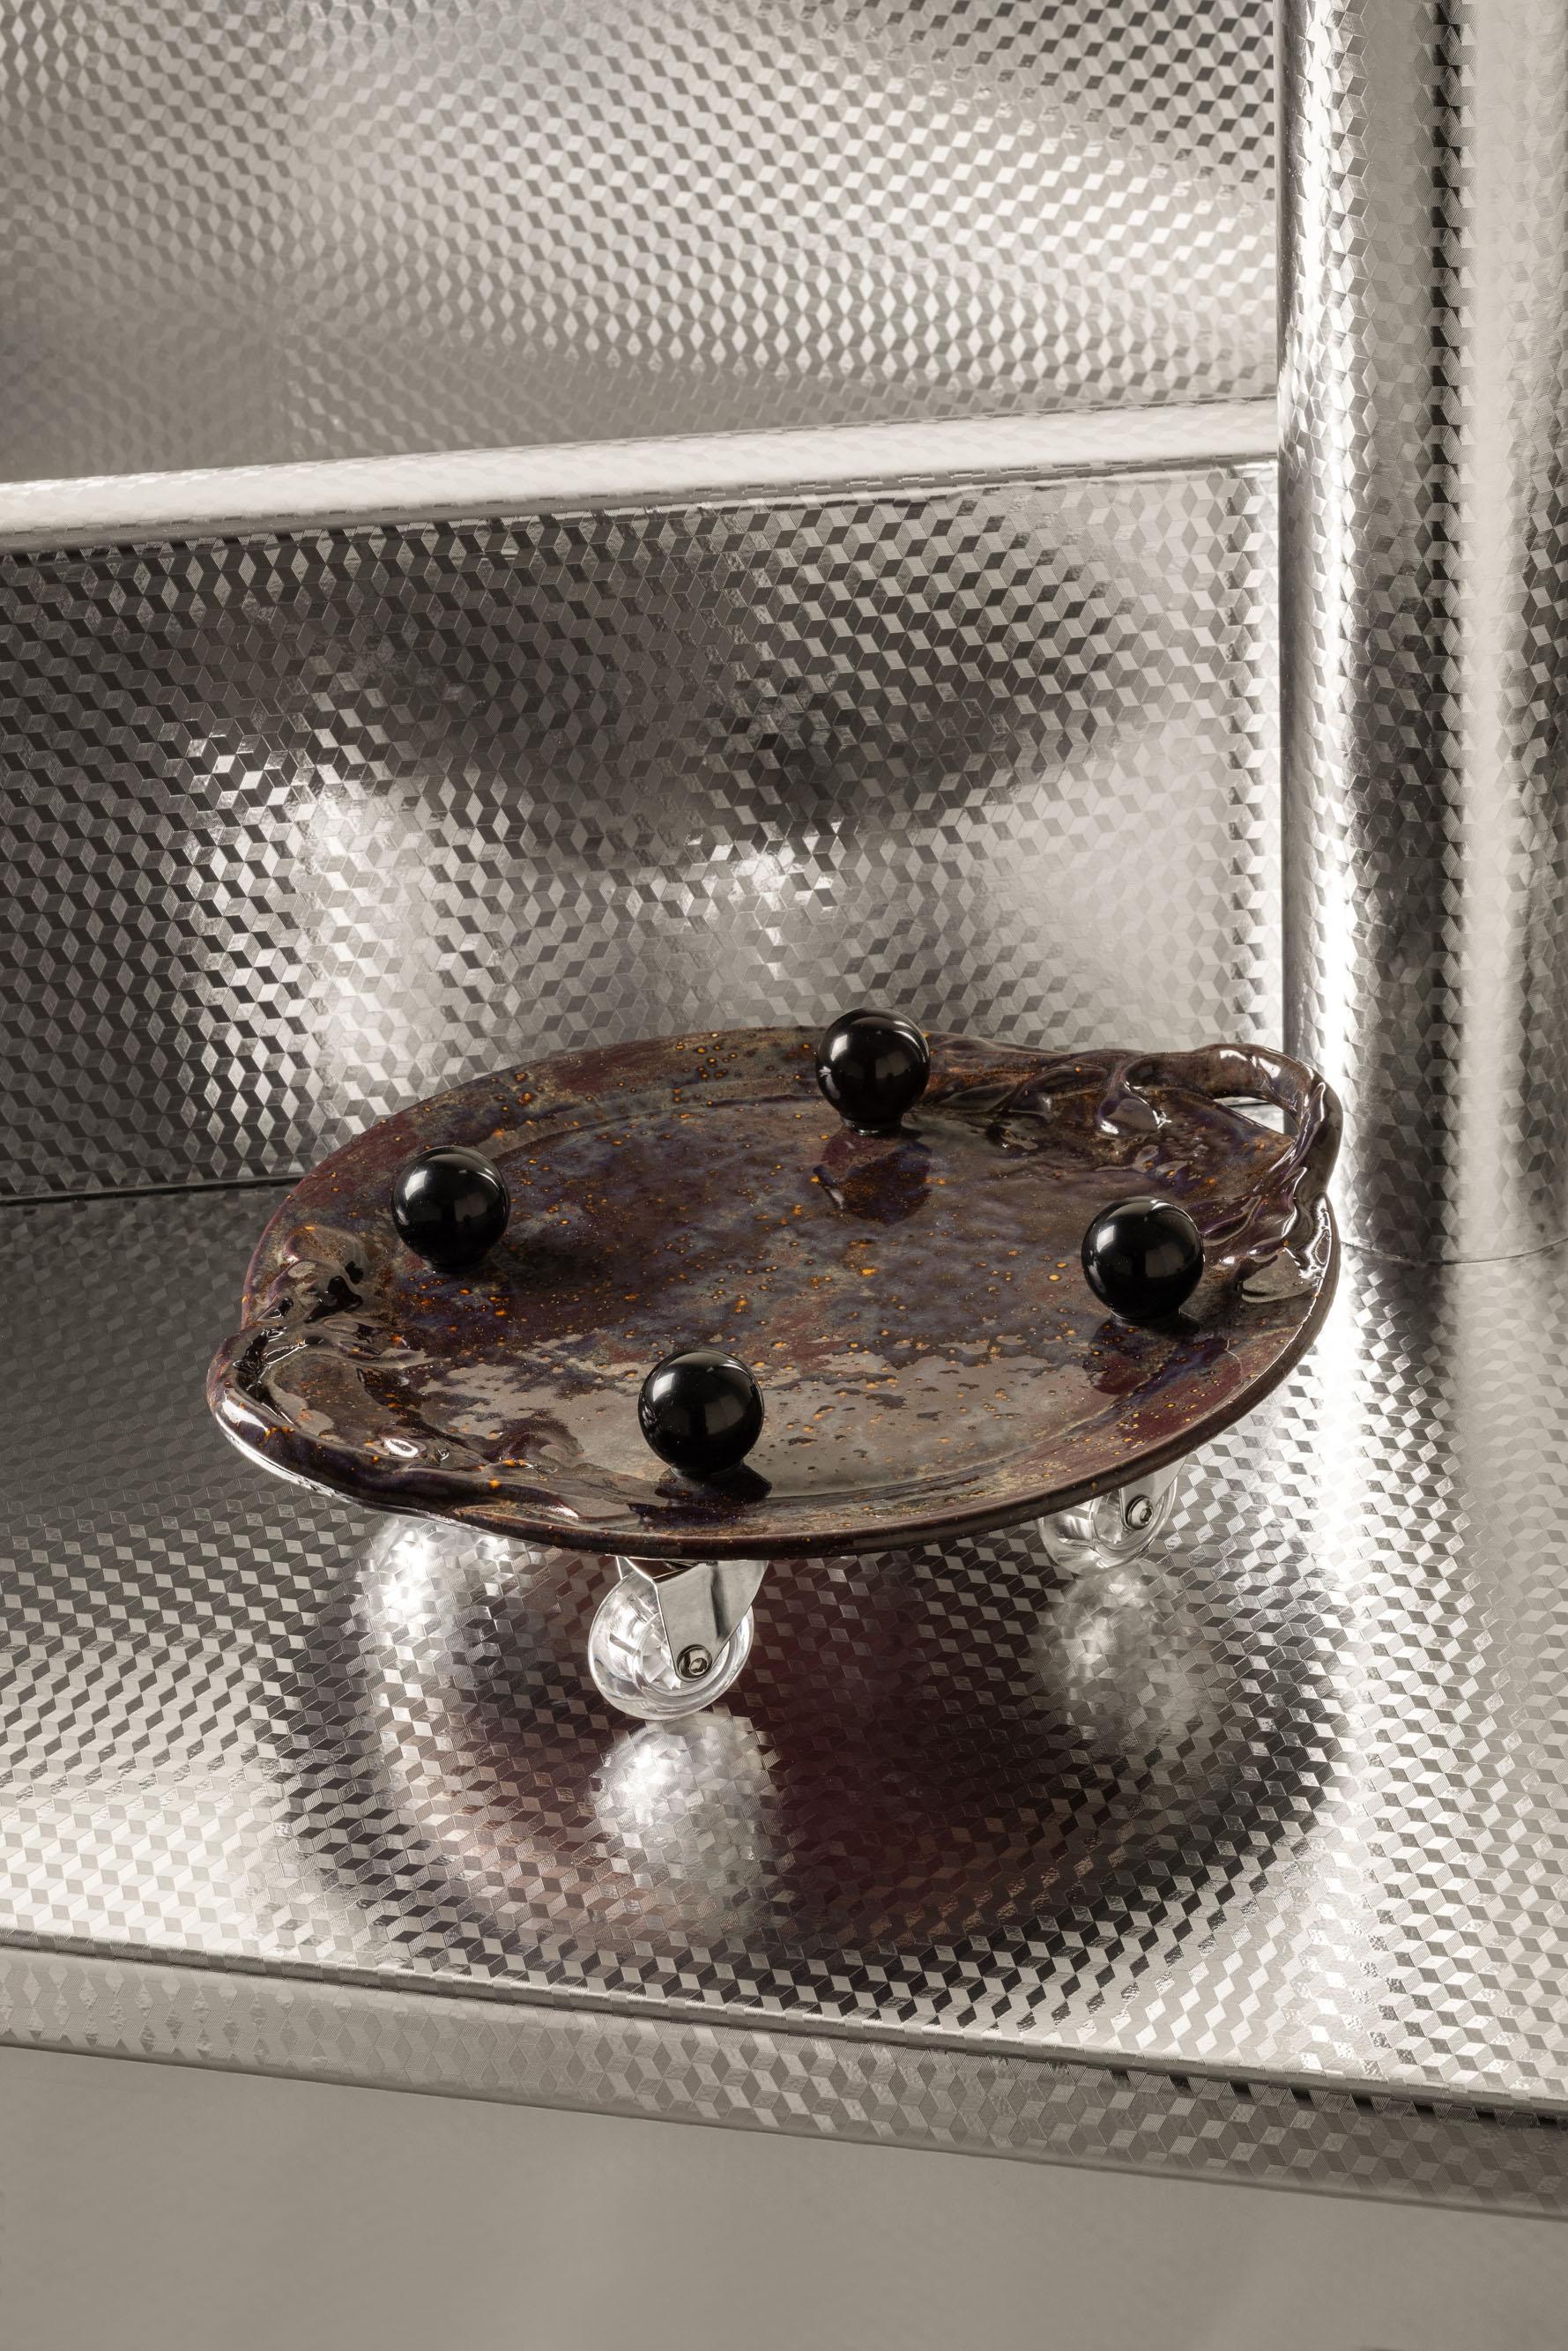 Mo'Mo'Po'Mo' !

Un plat de service en céramique monté sur des roulettes à 360 degrés pour une grande liberté de mouvement. 
Une manière interactive de recevoir à table, qui garantit qu'aucun invité égoïste ne s'accapare les hors-d'œuvre. 'Pass the